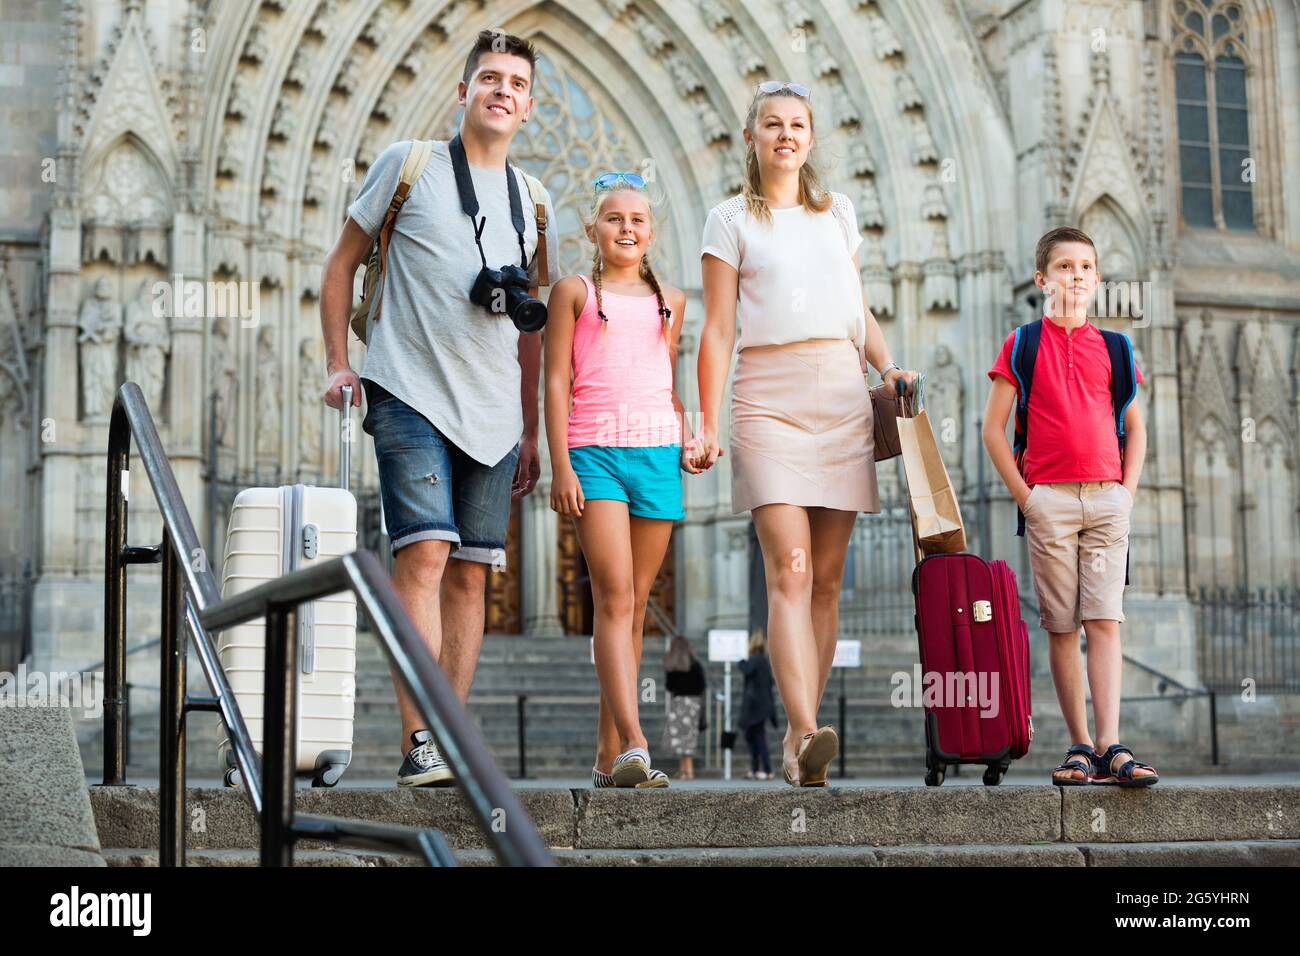 Famille de quatre personnes voyageant avec leurs bagages le long de la rue de la ville européenne Banque D'Images